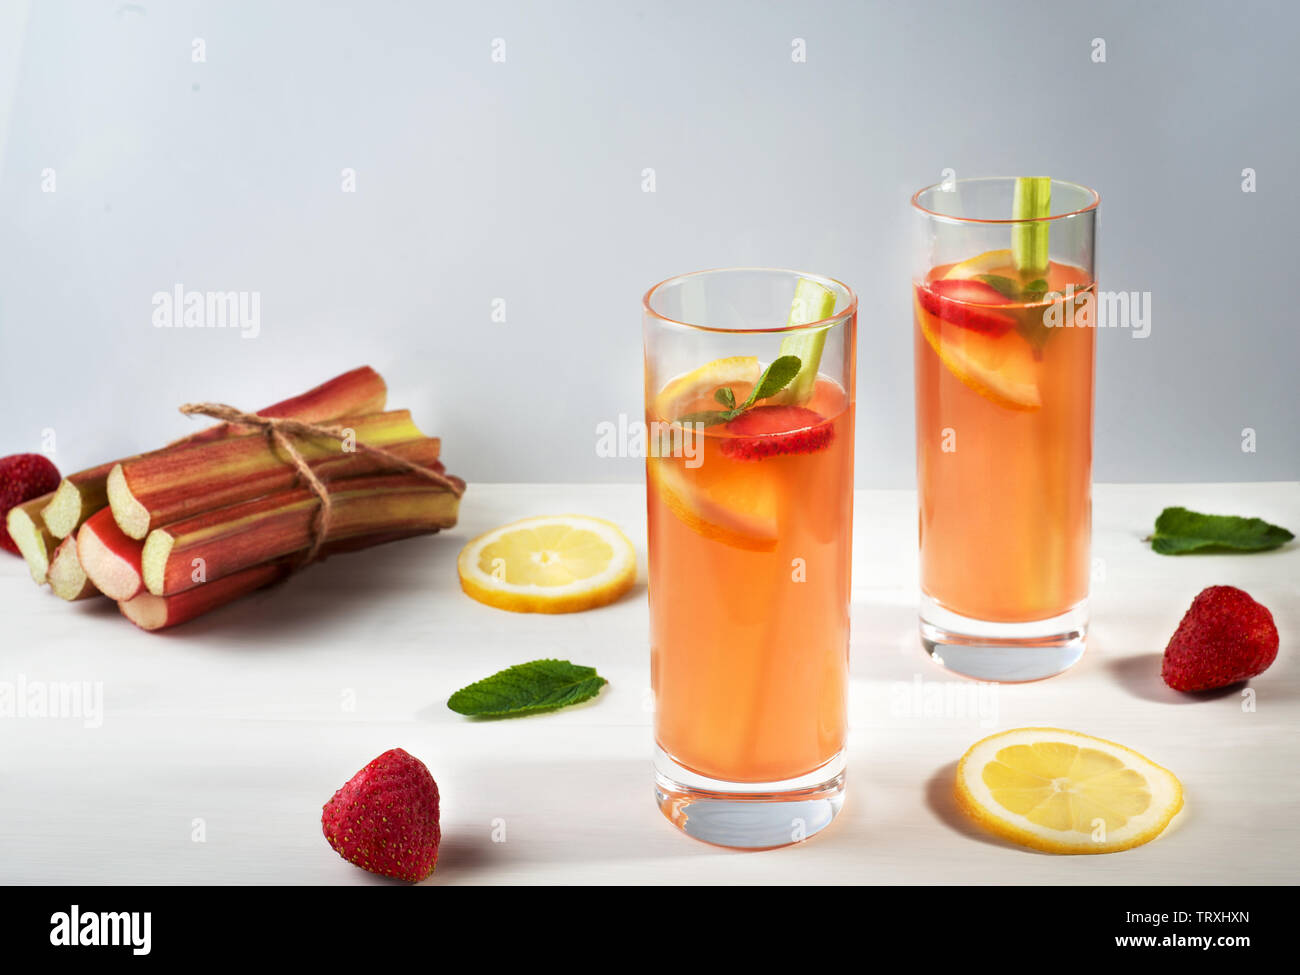 Hausgemachte bio Limonade mit Erdbeeren, Rhabarber und und Minze in zwei Gläser auf den hölzernen Hintergrund. Gesunde natürliche aromatisierte Getränk. Stockfoto